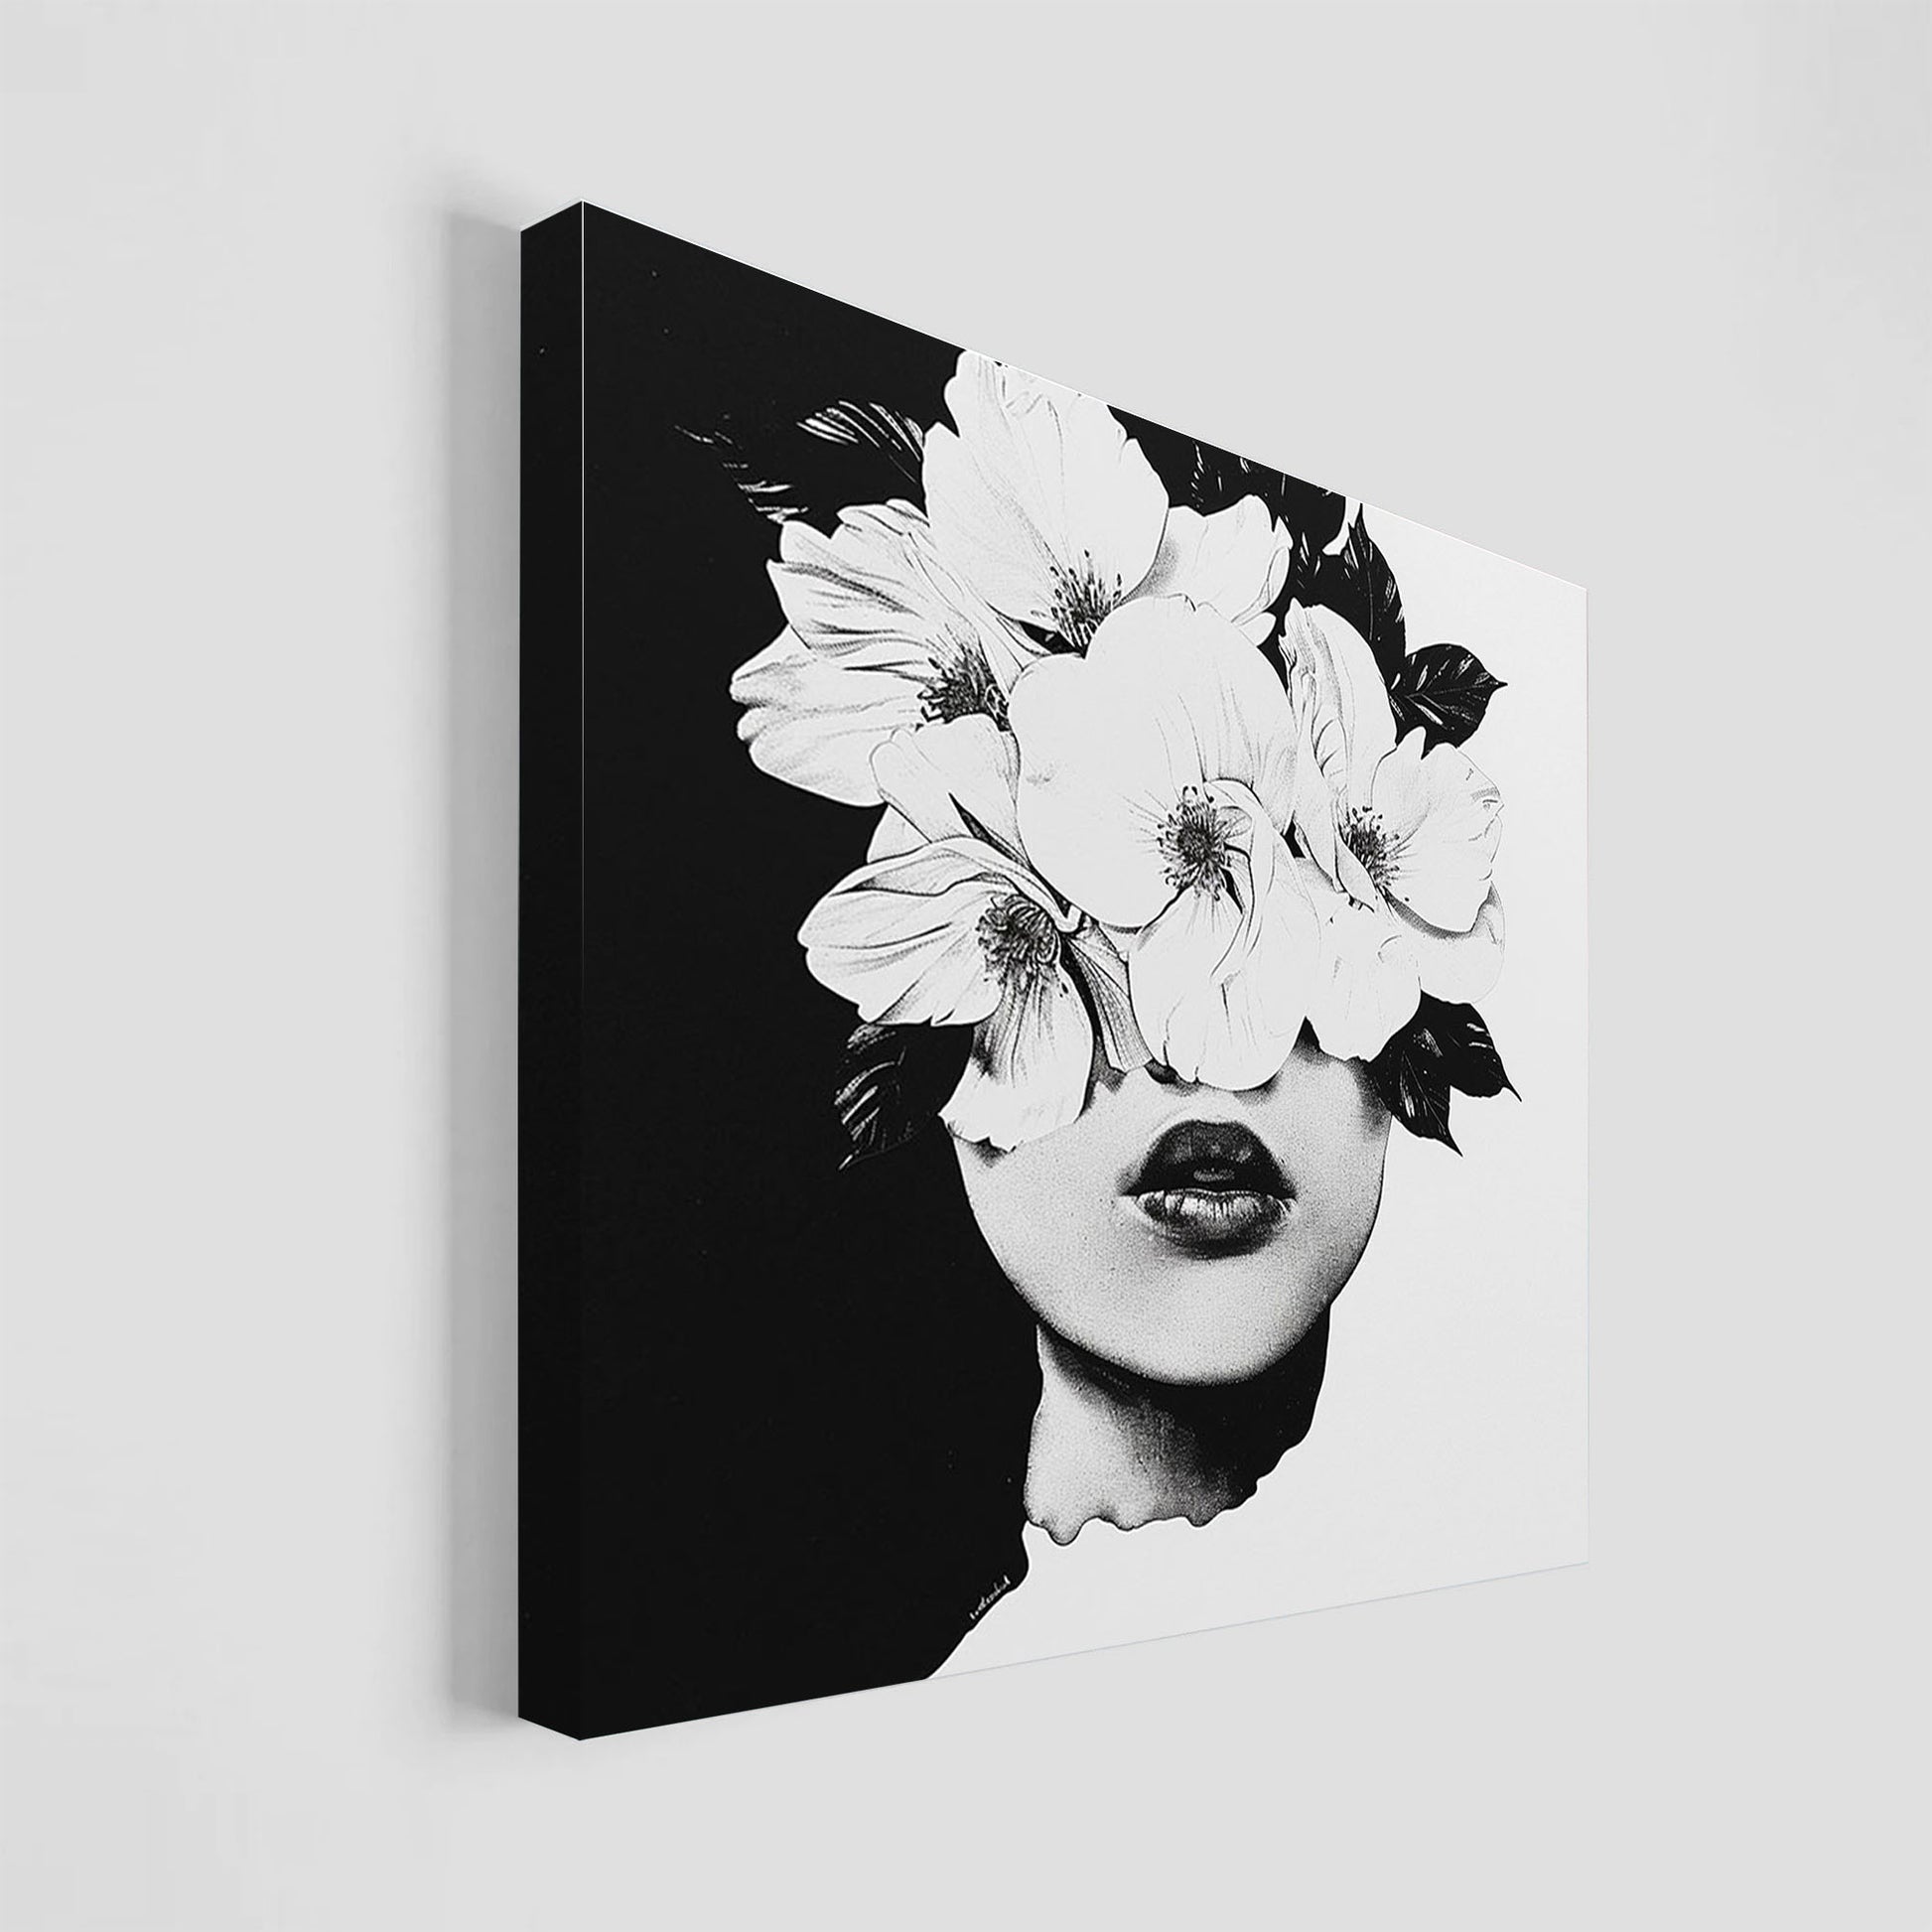 Ilustración en blanco y negro de un rostro humano fusionado con flores delicadas